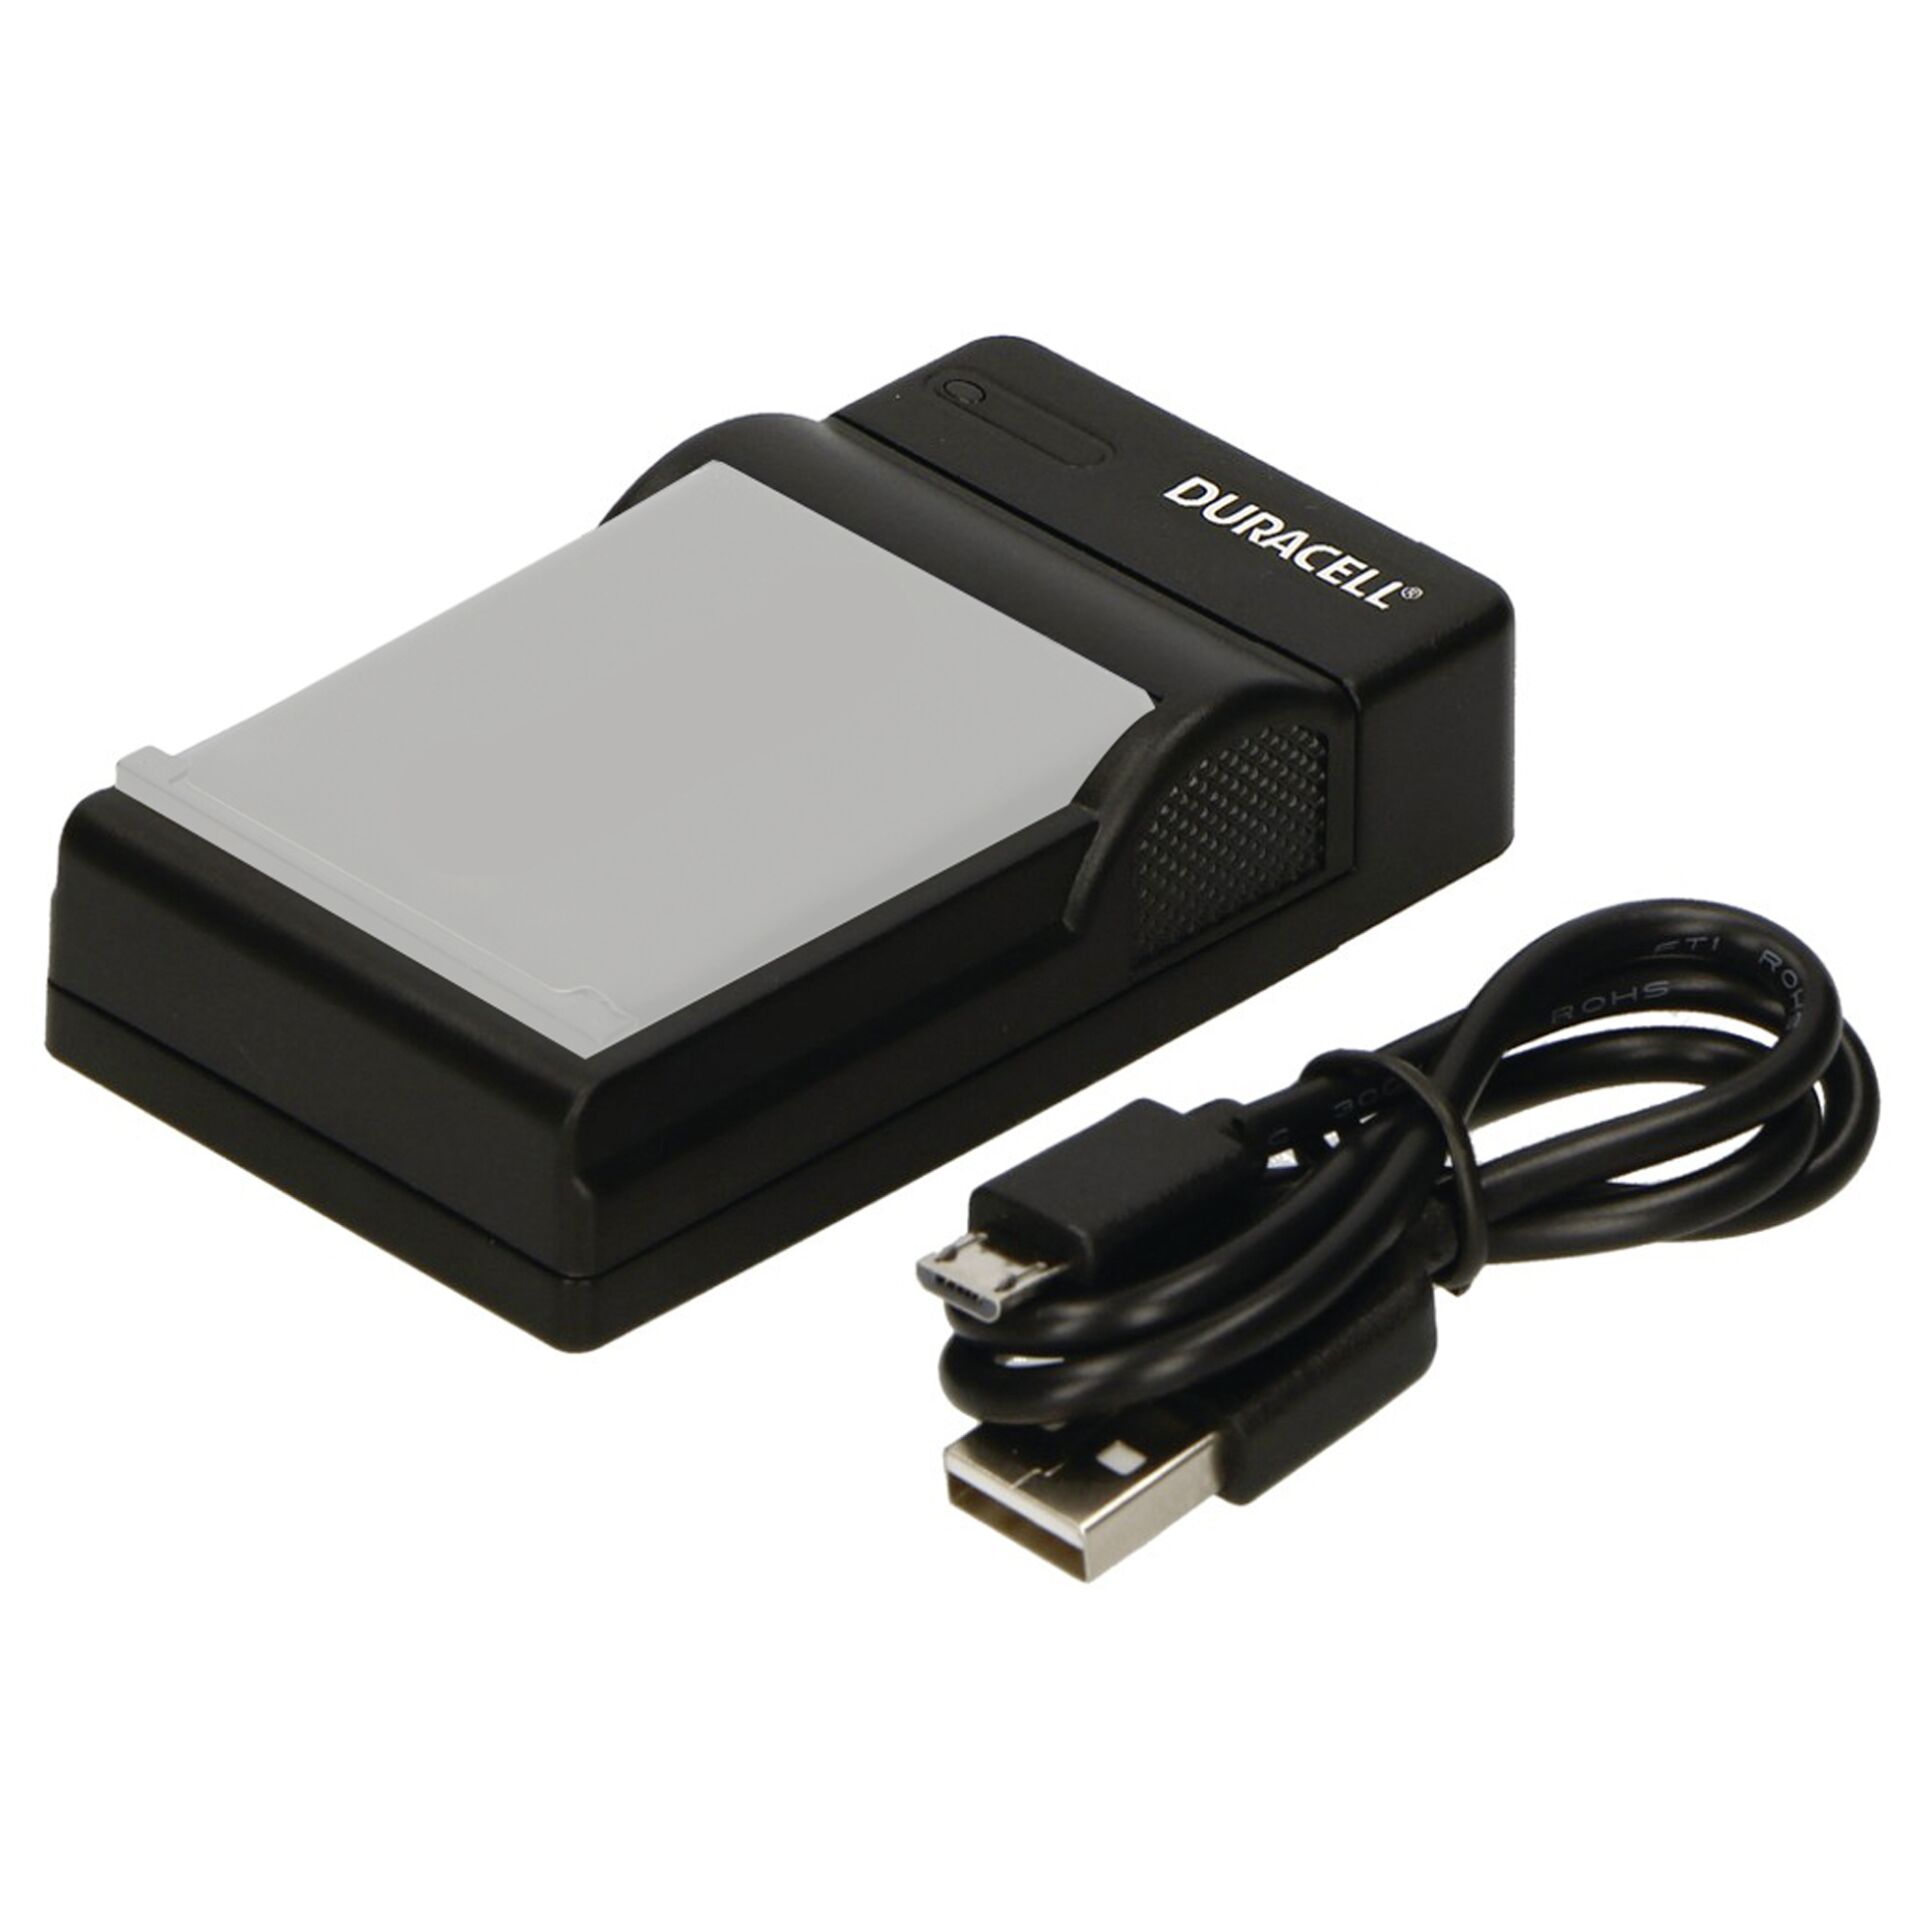 Duracell Ladegerät mit USB Kabel für Olympus Li-40B/Fuji NP-45